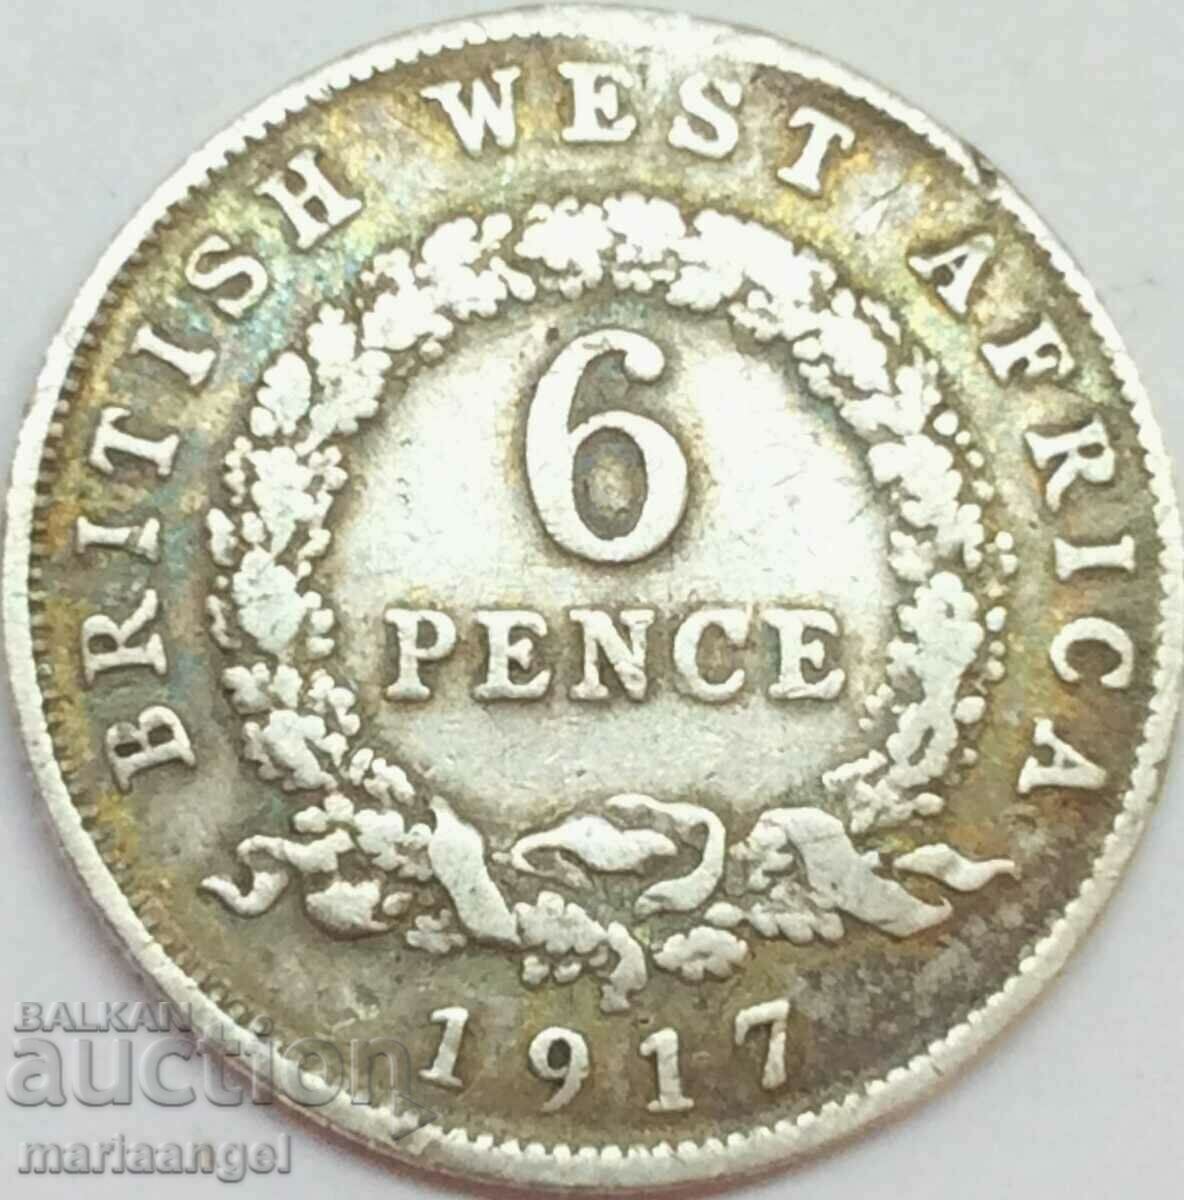 Africa de Vest Britanică 6 Pence 1917 Argint - Foarte rar!